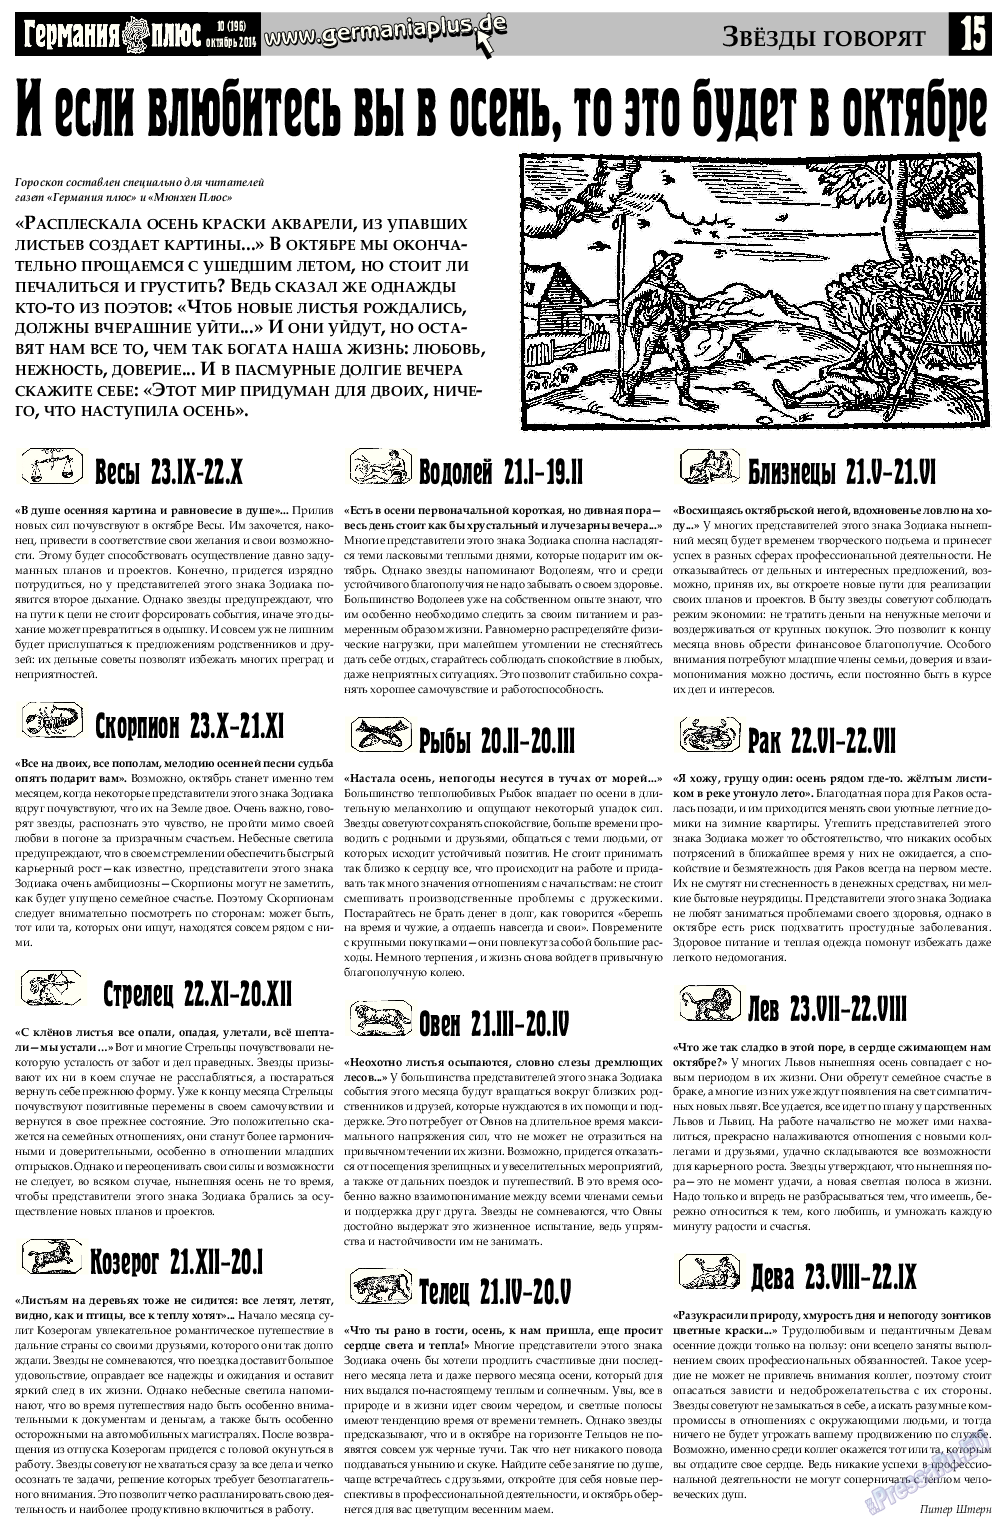 Германия плюс, газета. 2014 №9 стр.15